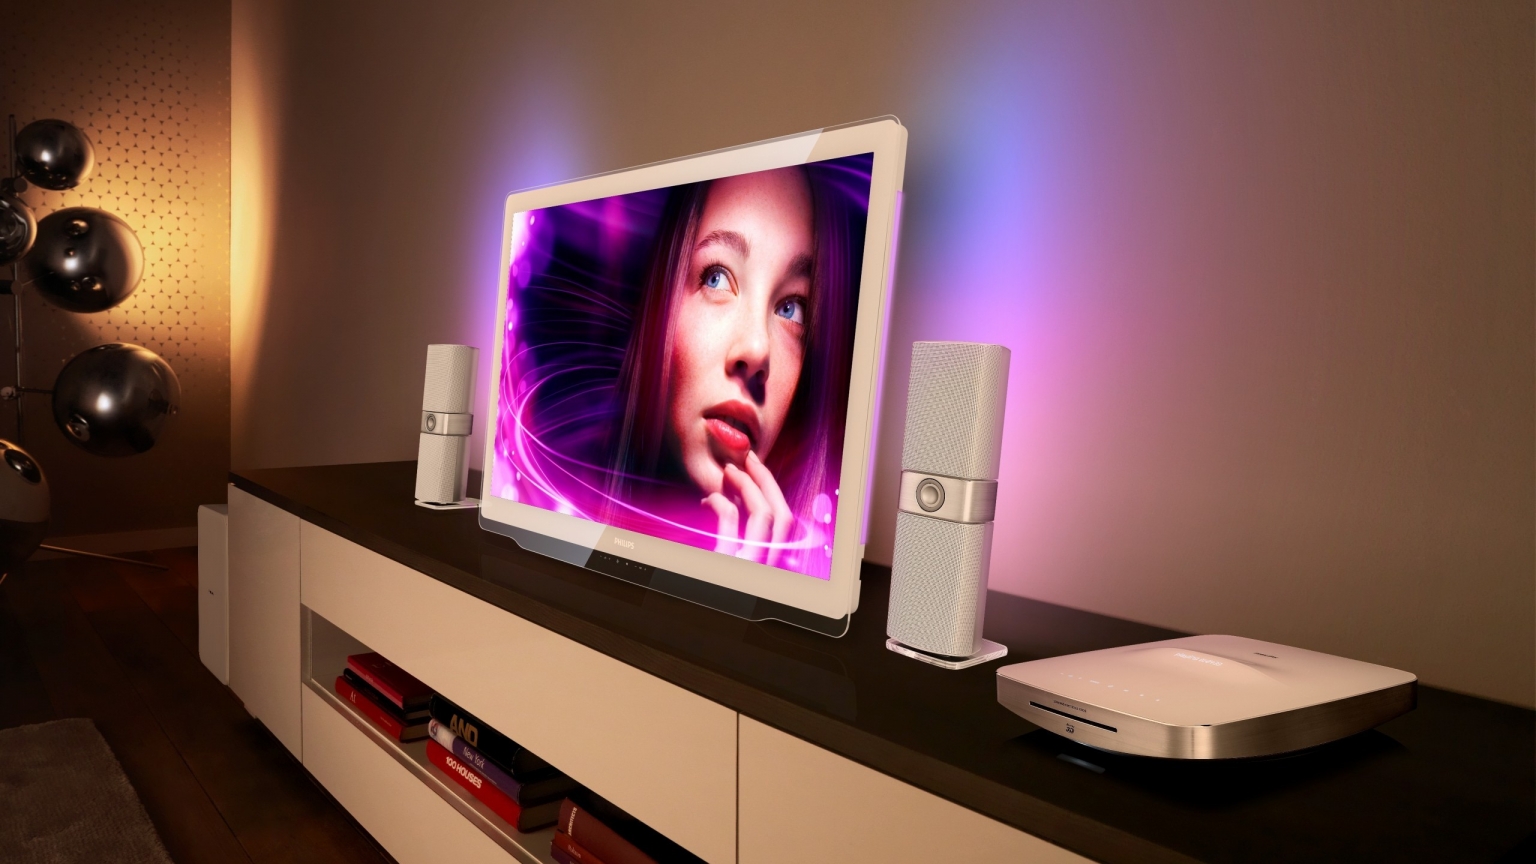 Philips DesignLine TV for 1536 x 864 HDTV resolution